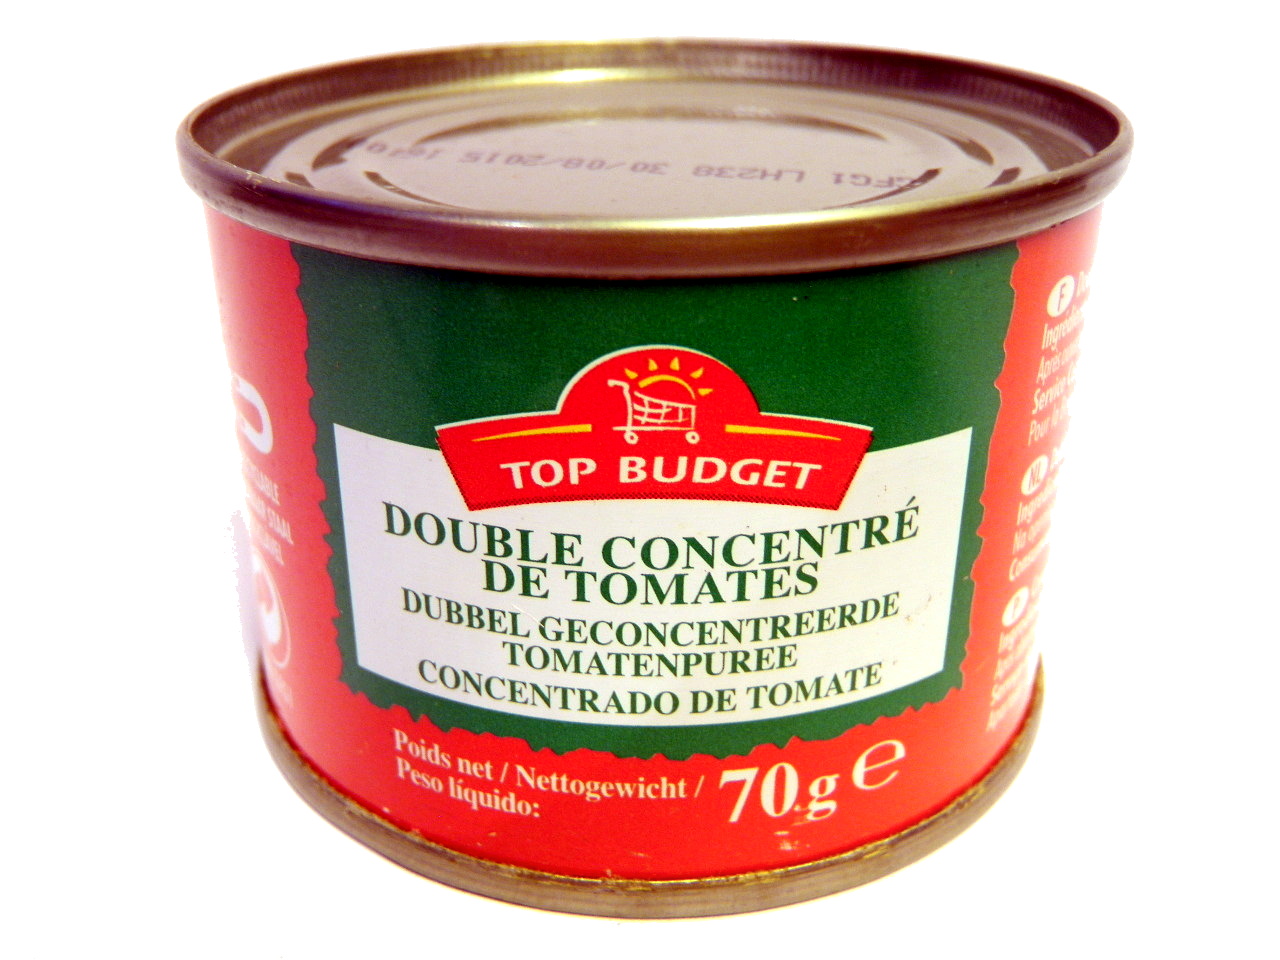 Double concentré de tomates (28%) - Producto - fr